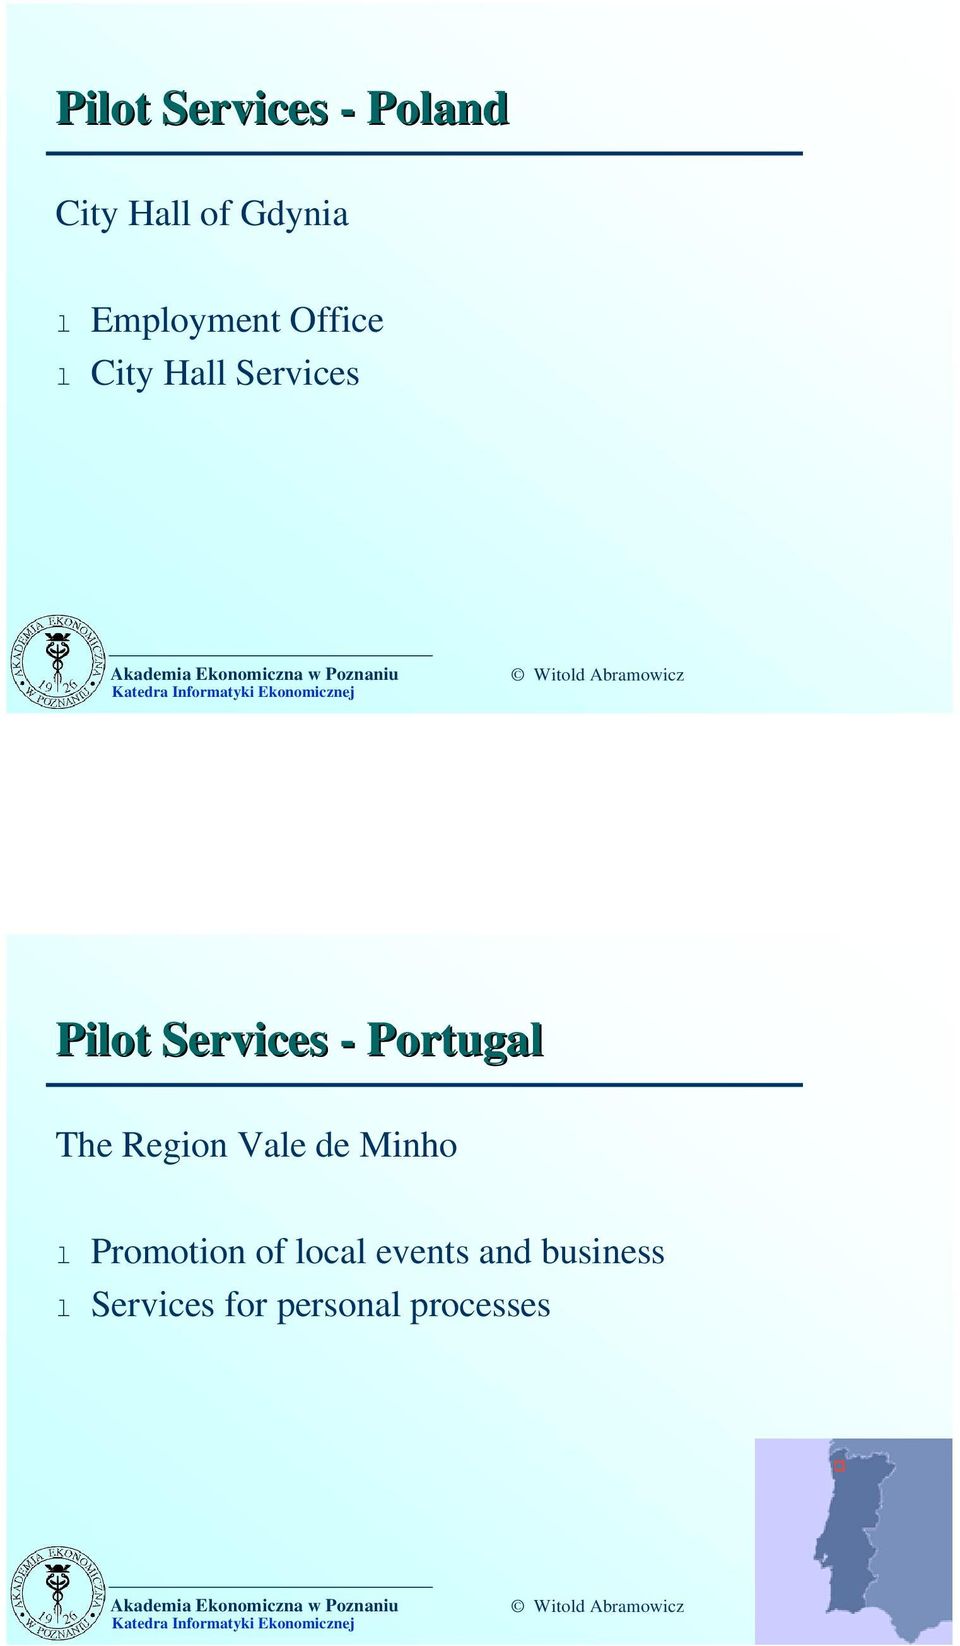 Services - Portugal The Region Vale de Minho l